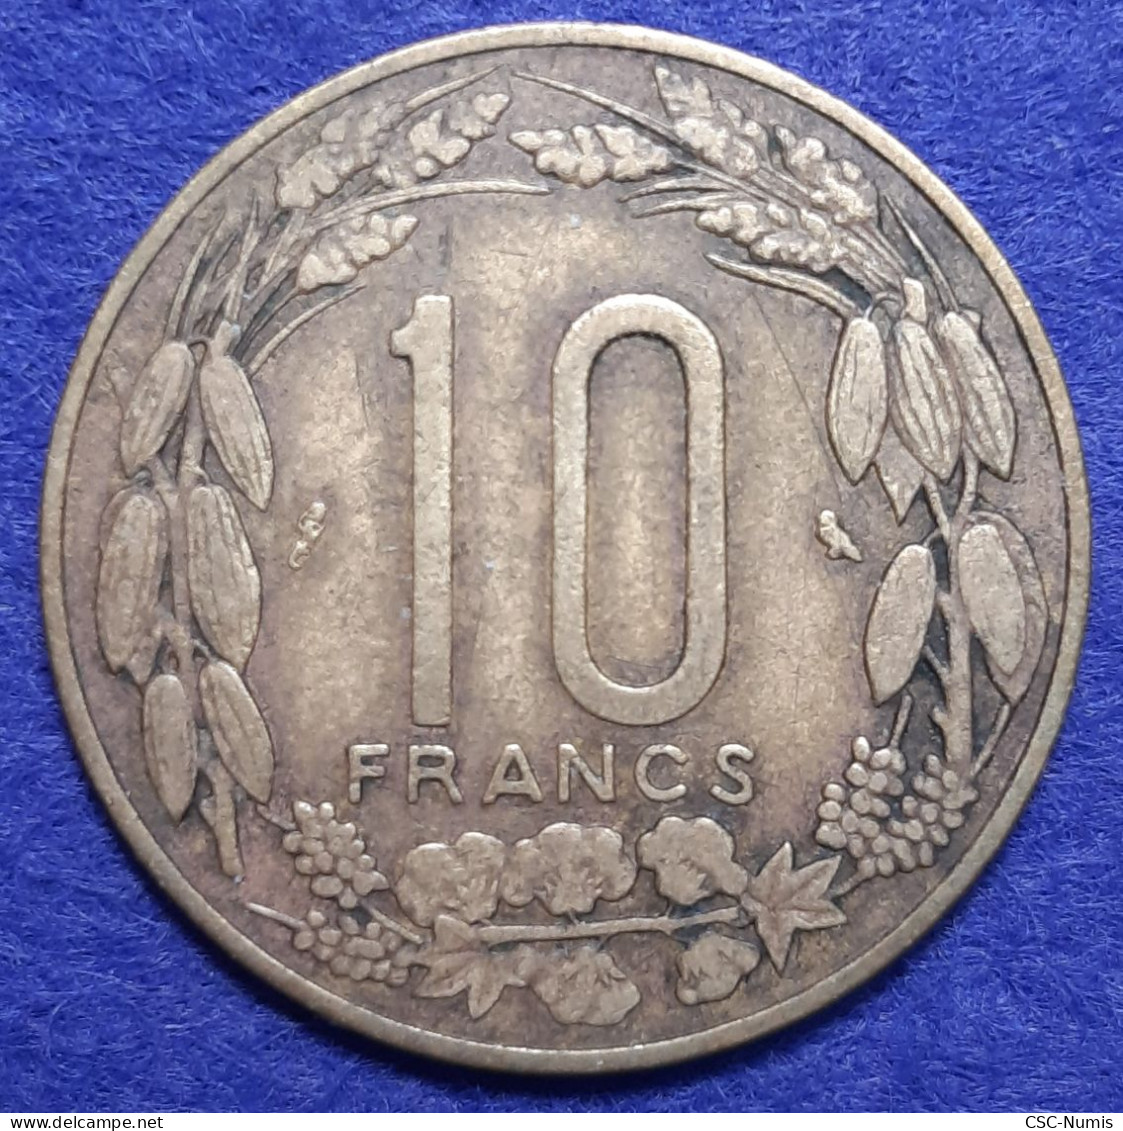 (CG#102) - Cameroun - 10 Francs 1961 - Cameroun